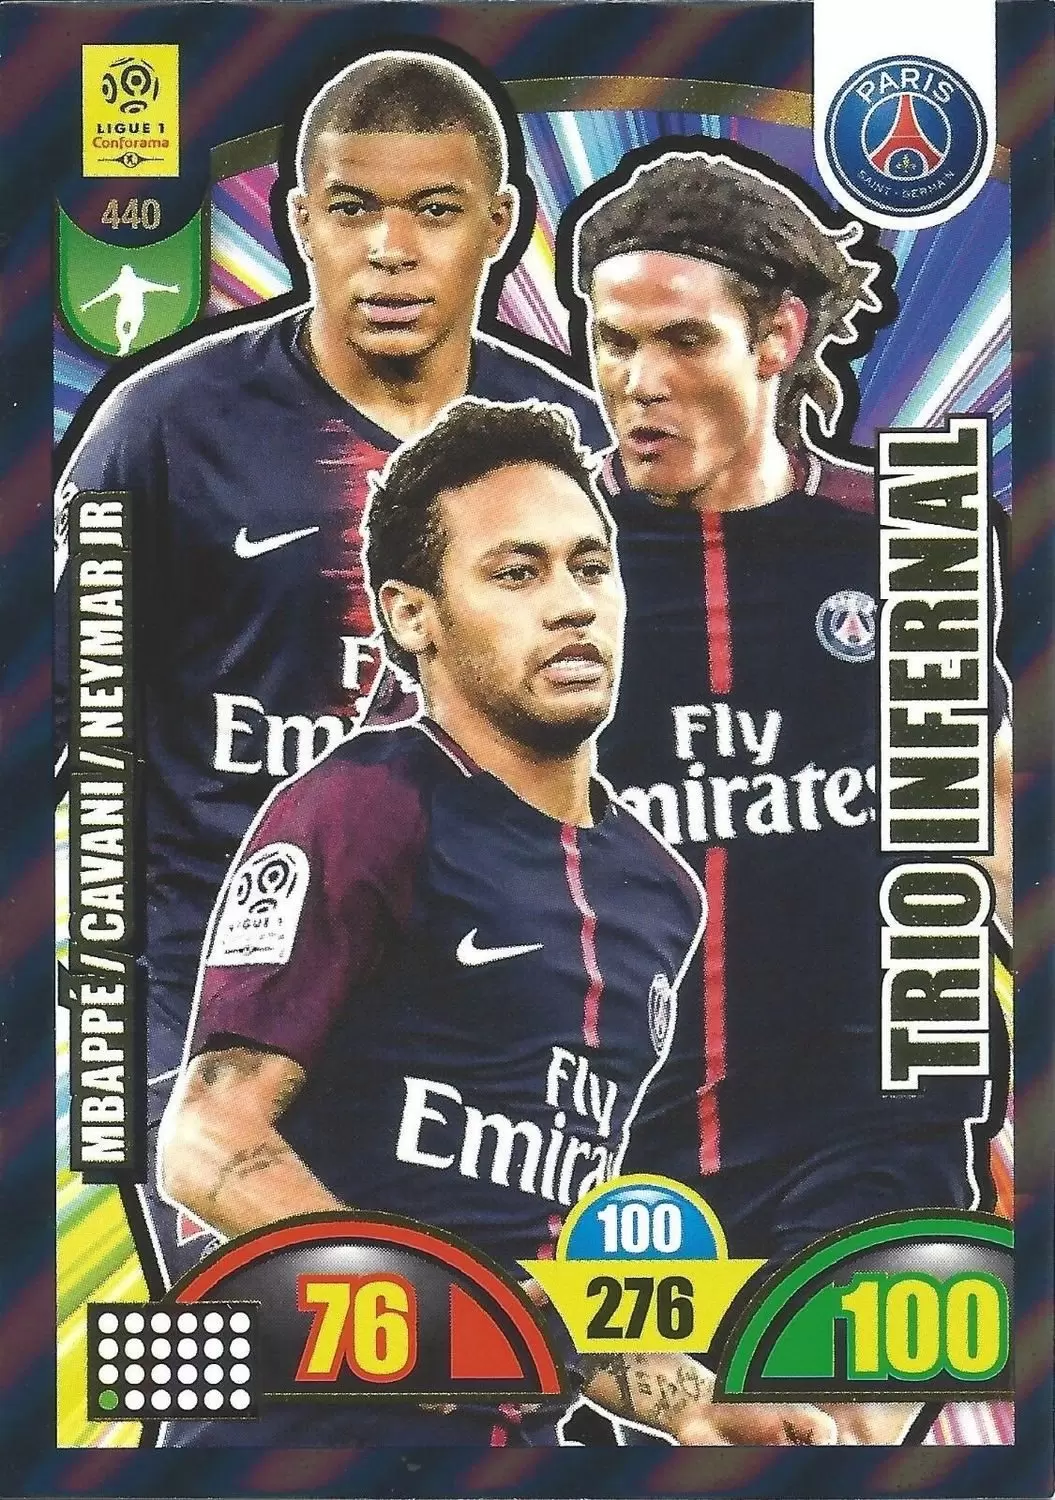 Adrenalyn XL : 2018-2019 (France) - Kylian Mbappé / Edinson Cavani / Neymar Jr - Paris Saint-Germain